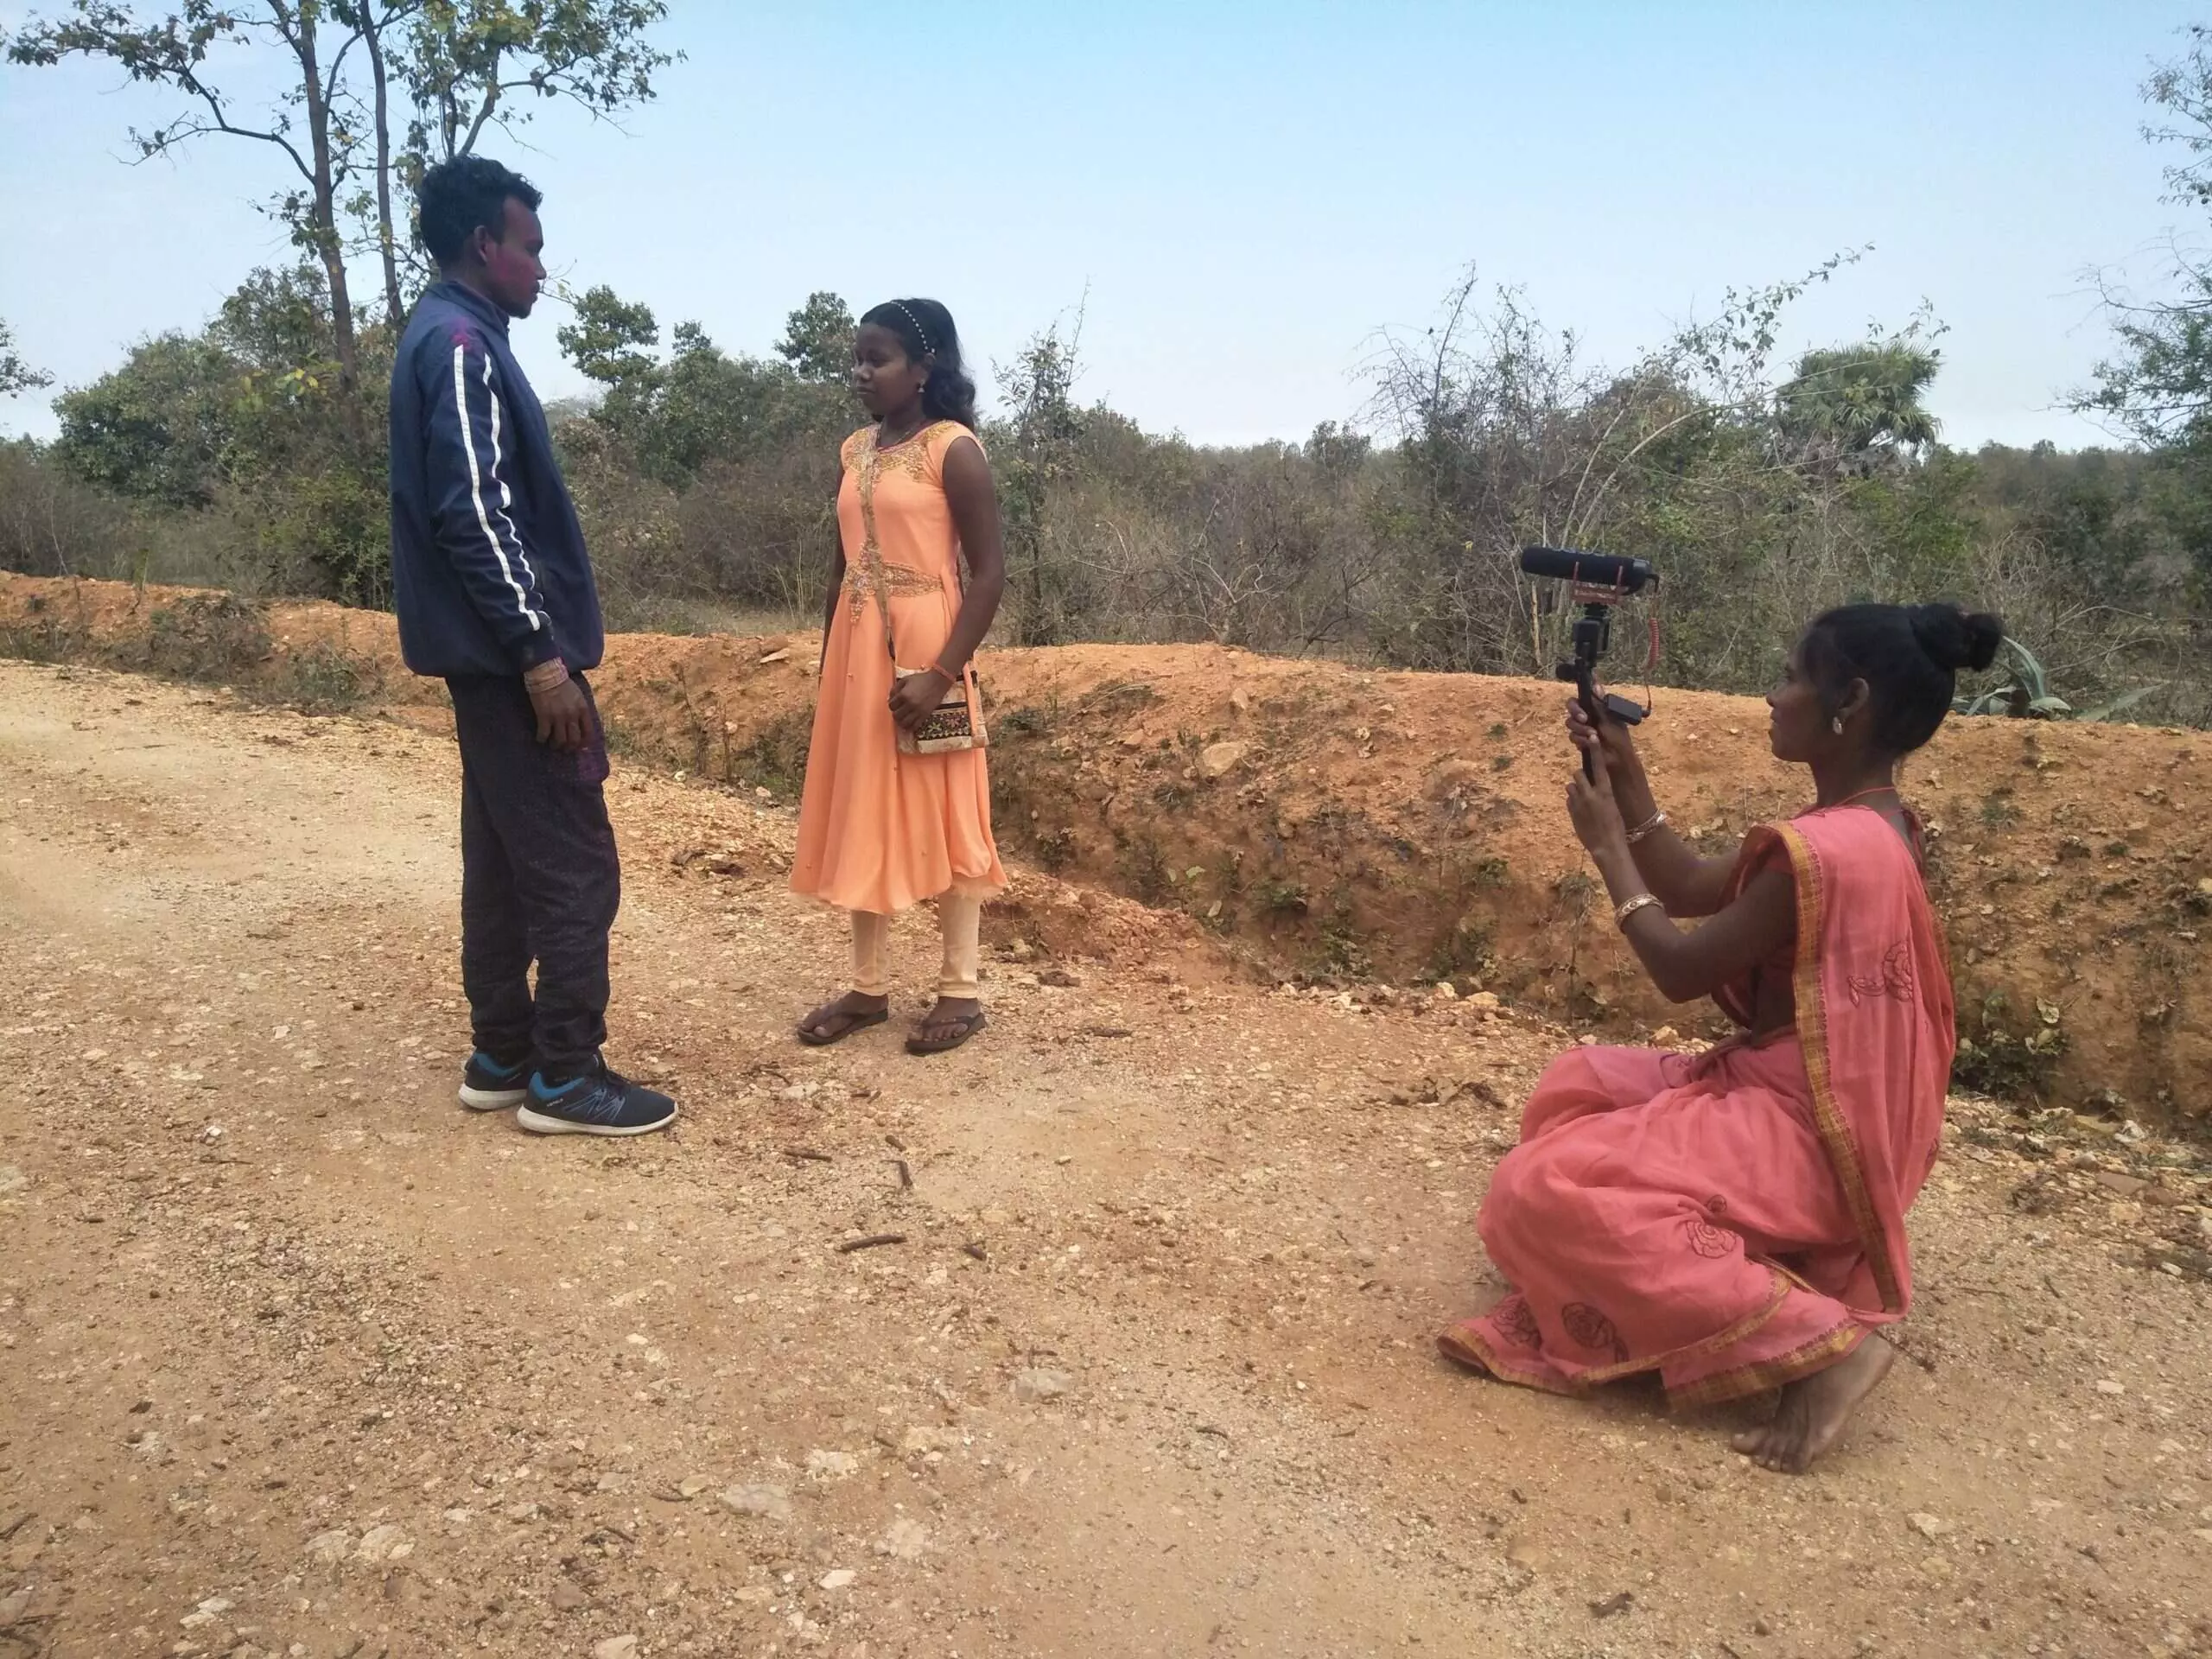 कैमरे और इंटरनेट की मदद से संथाल जनजाति की कहानियों को आगे लाने में जुटी उनकी नई पीढ़ी